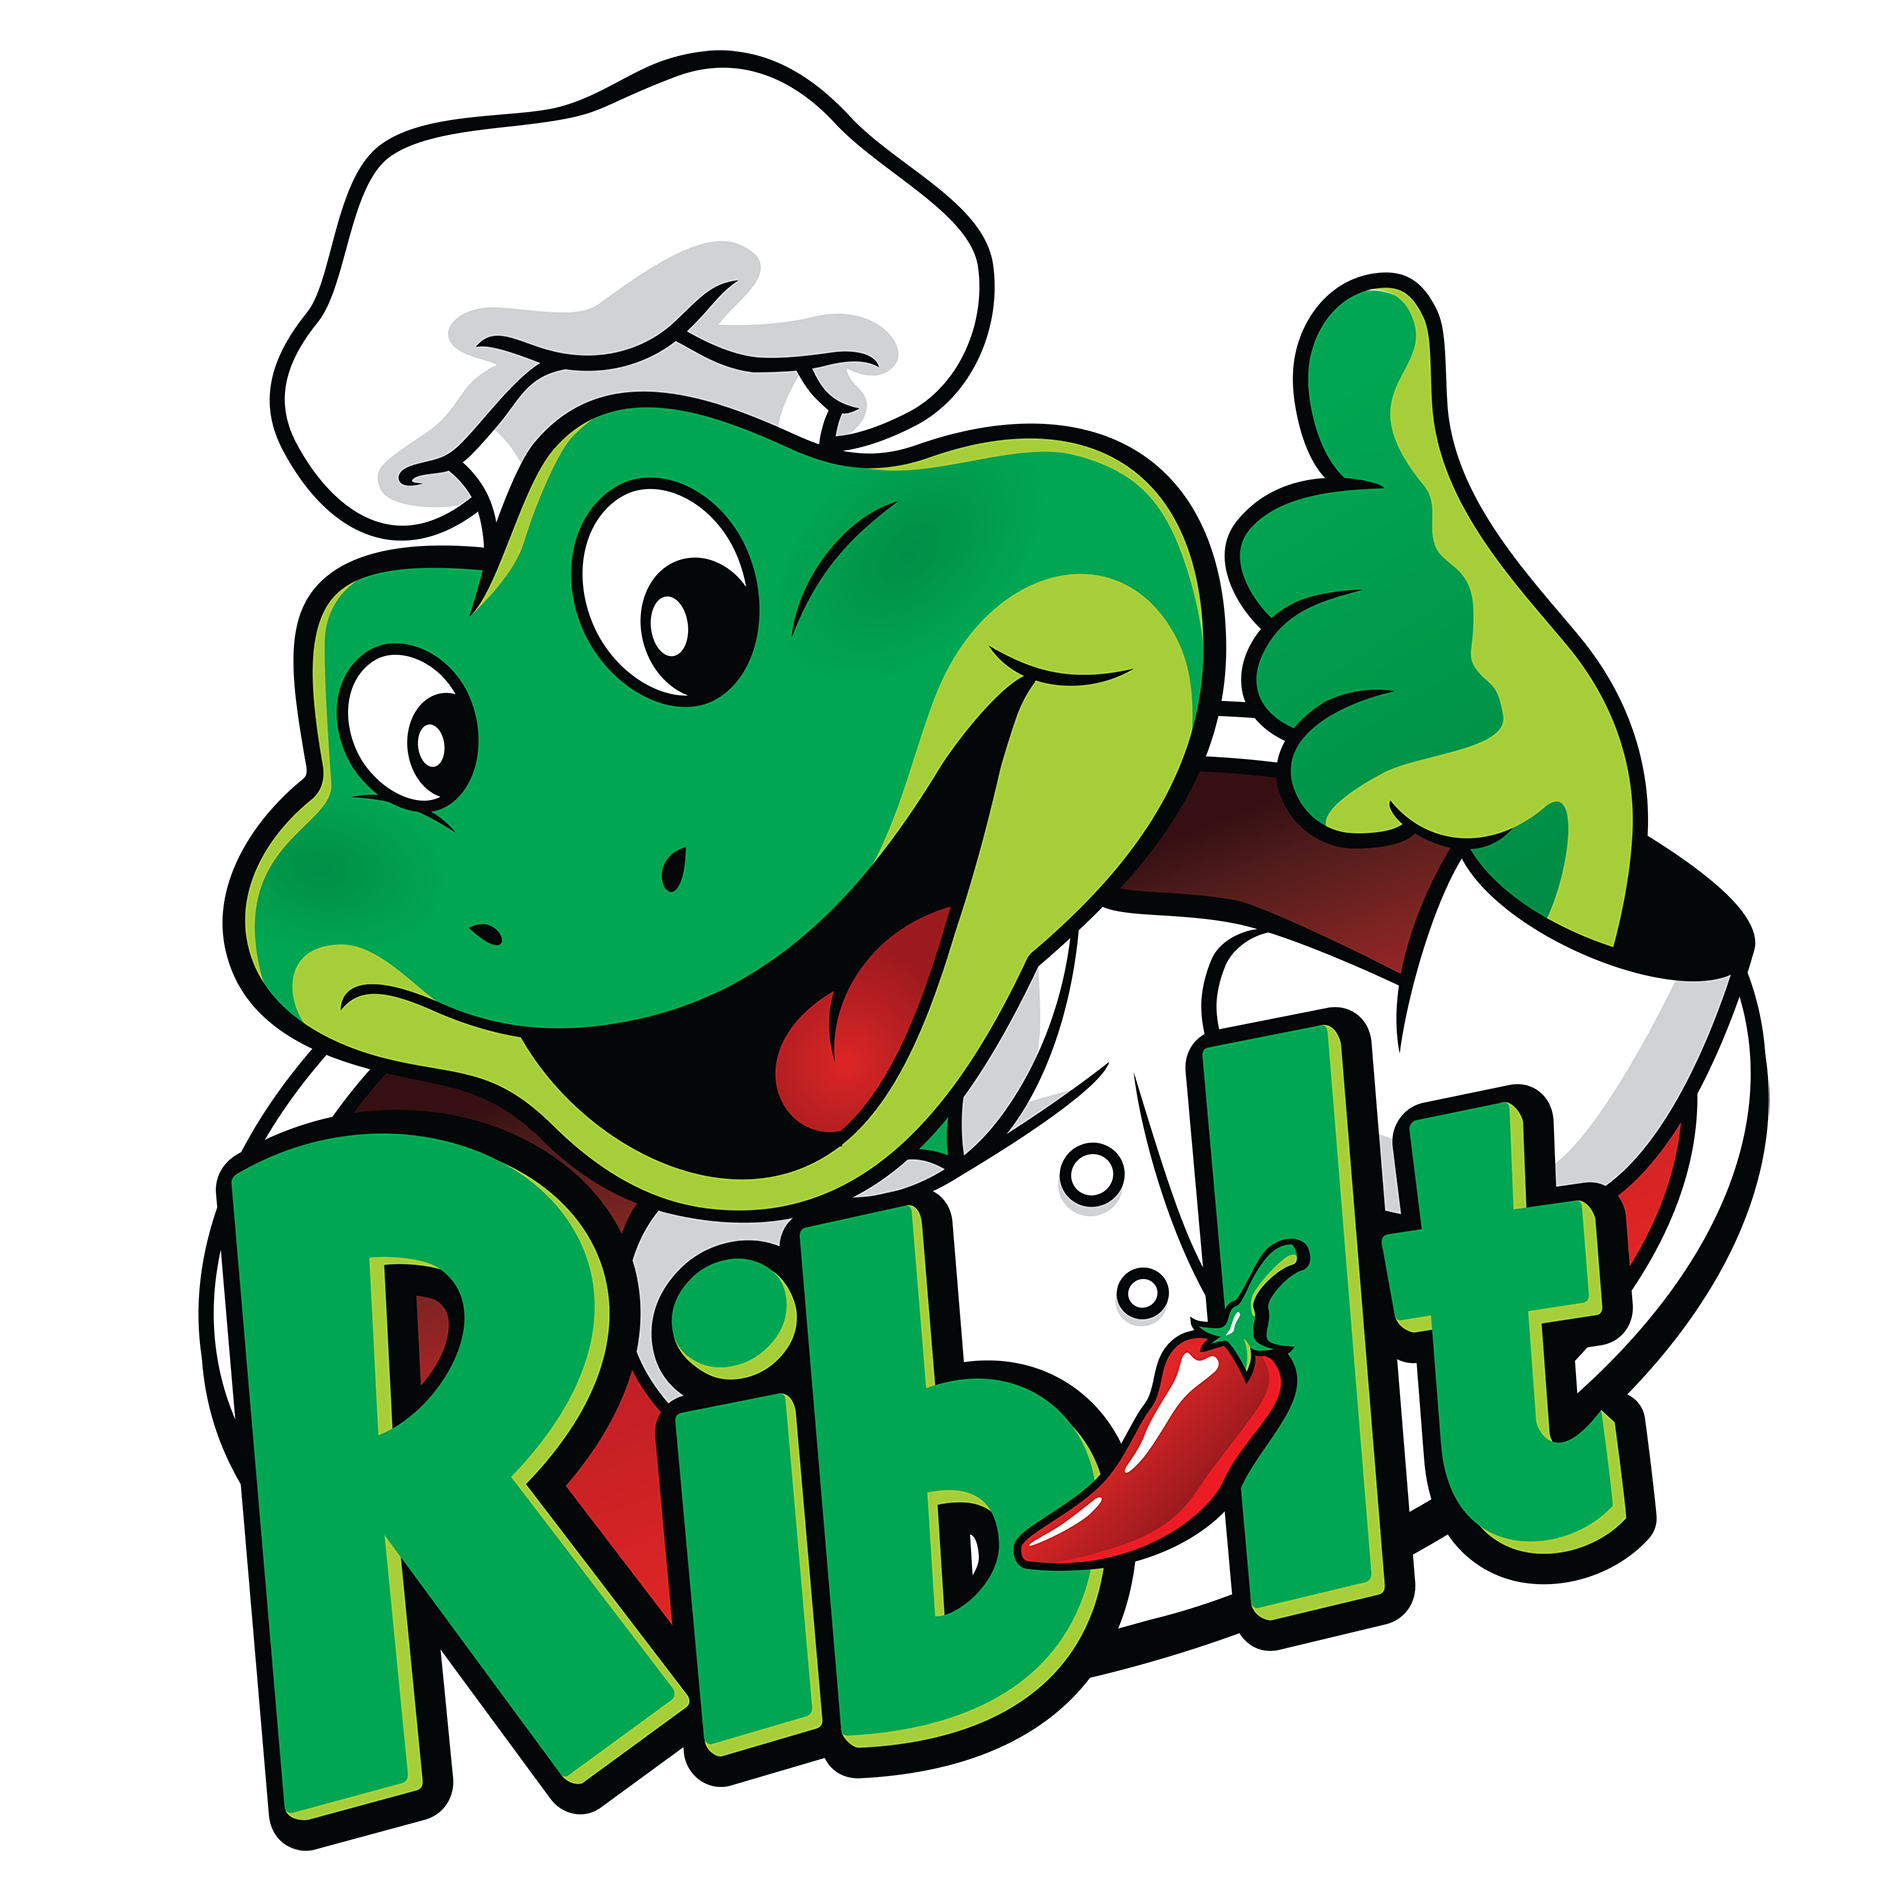 Rib-it!